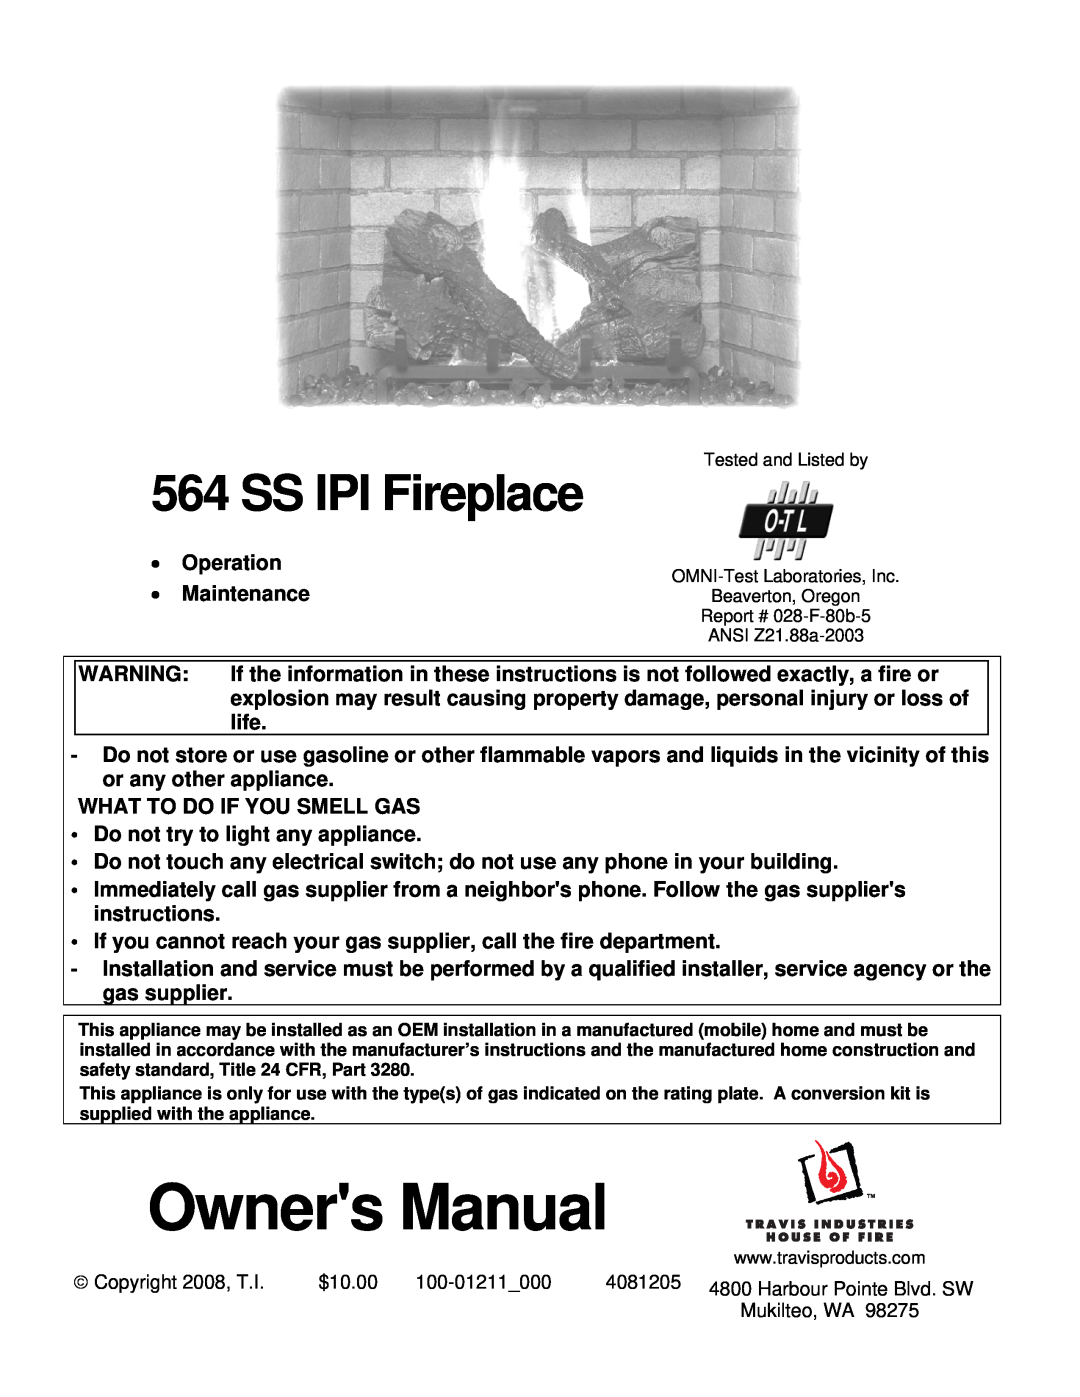 FireplaceXtrordinair 564 owner manual SS IPI Fireplace 